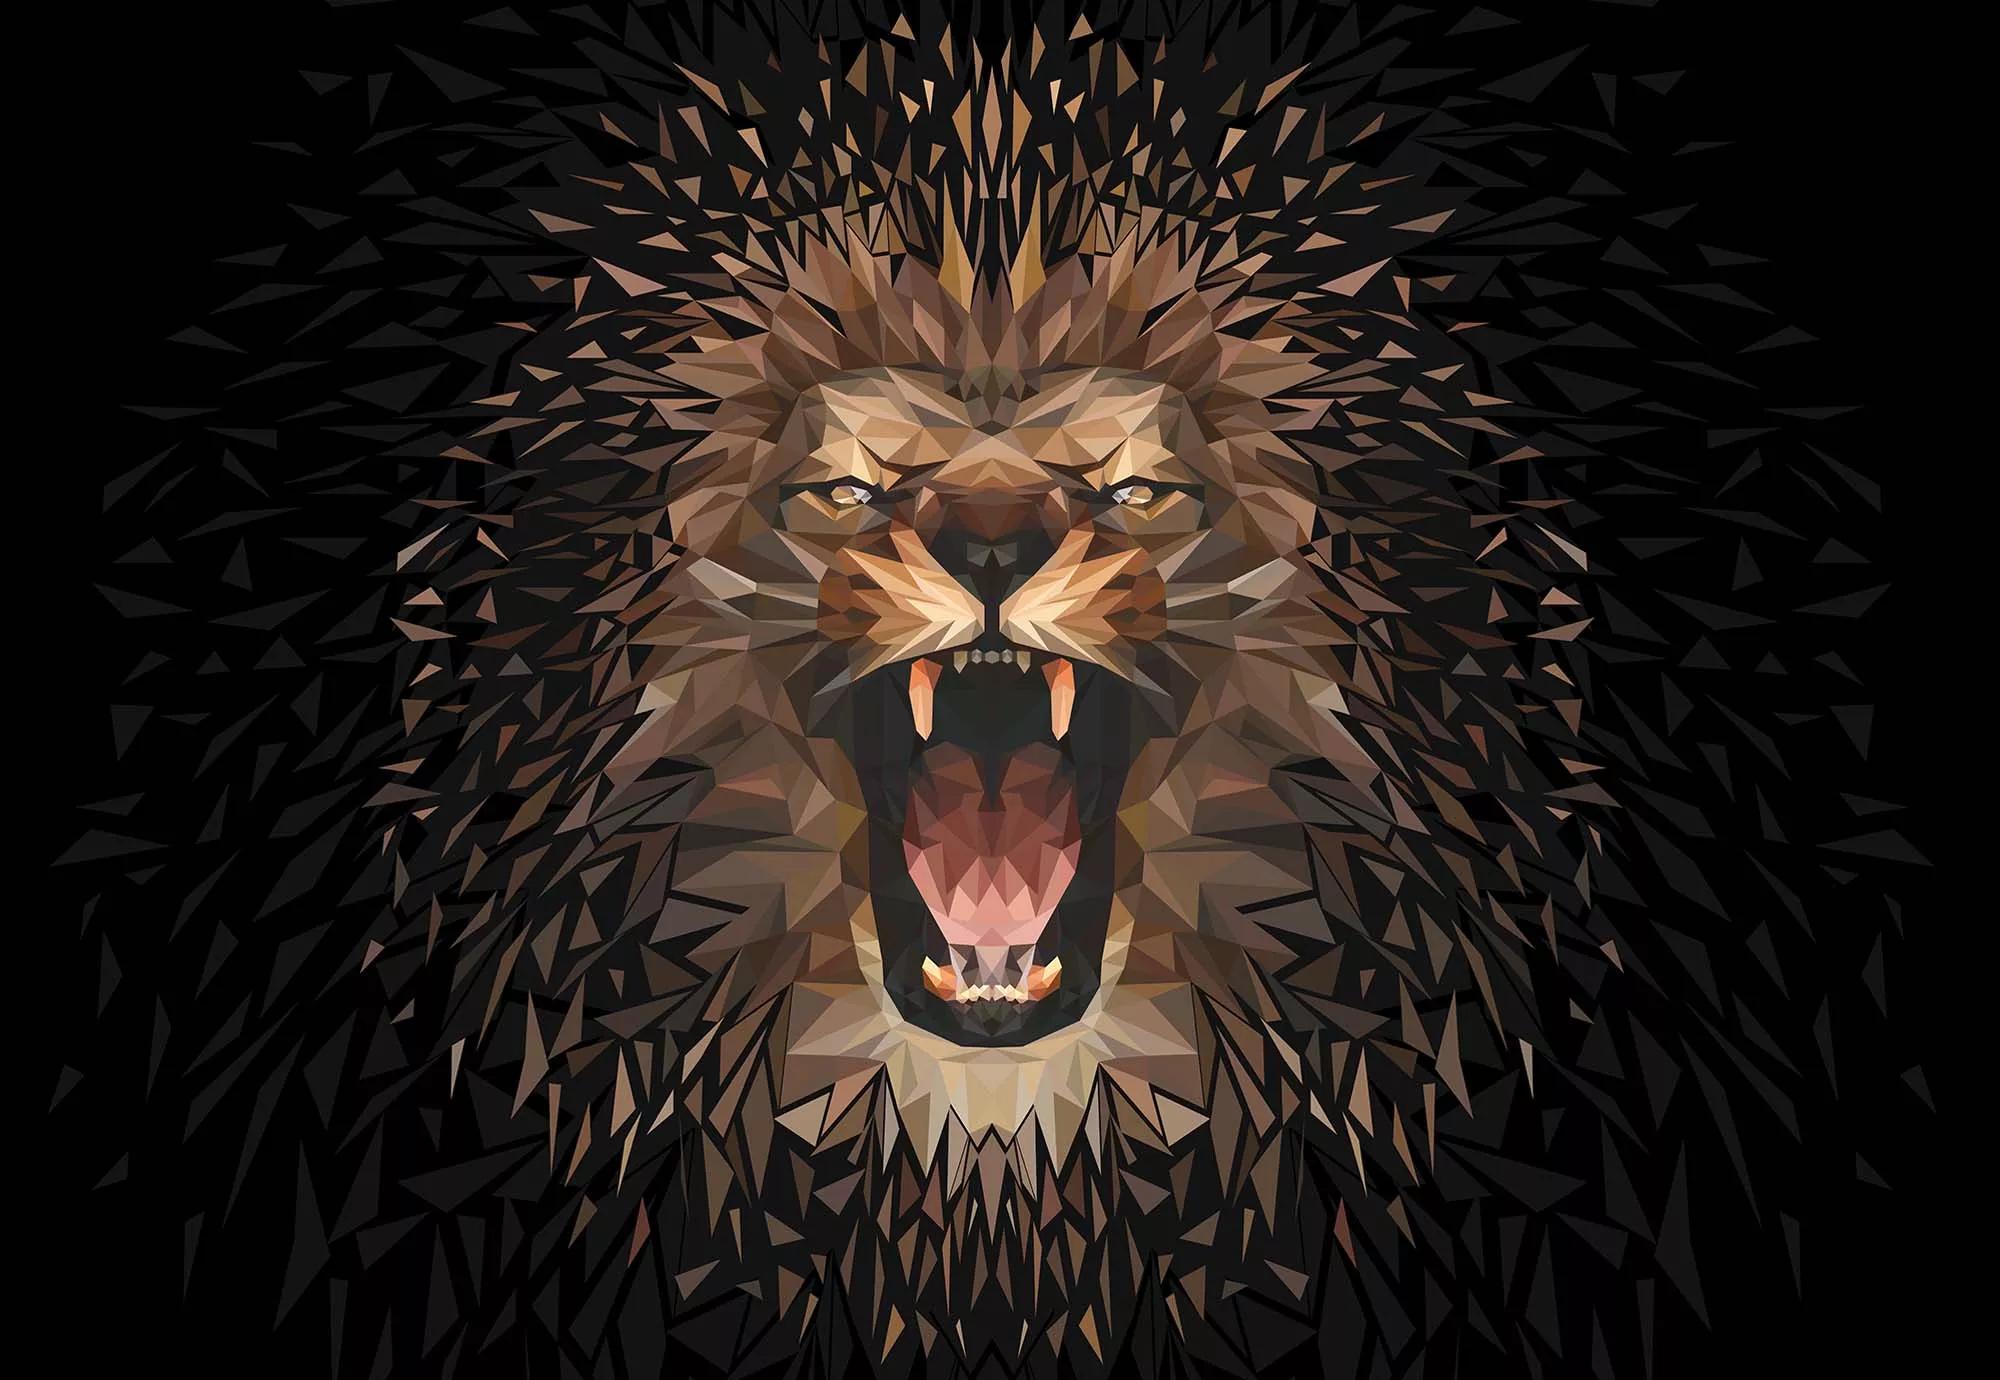 Fali poszter modern oroszlán mintával fekete alapon 368x254 vlies